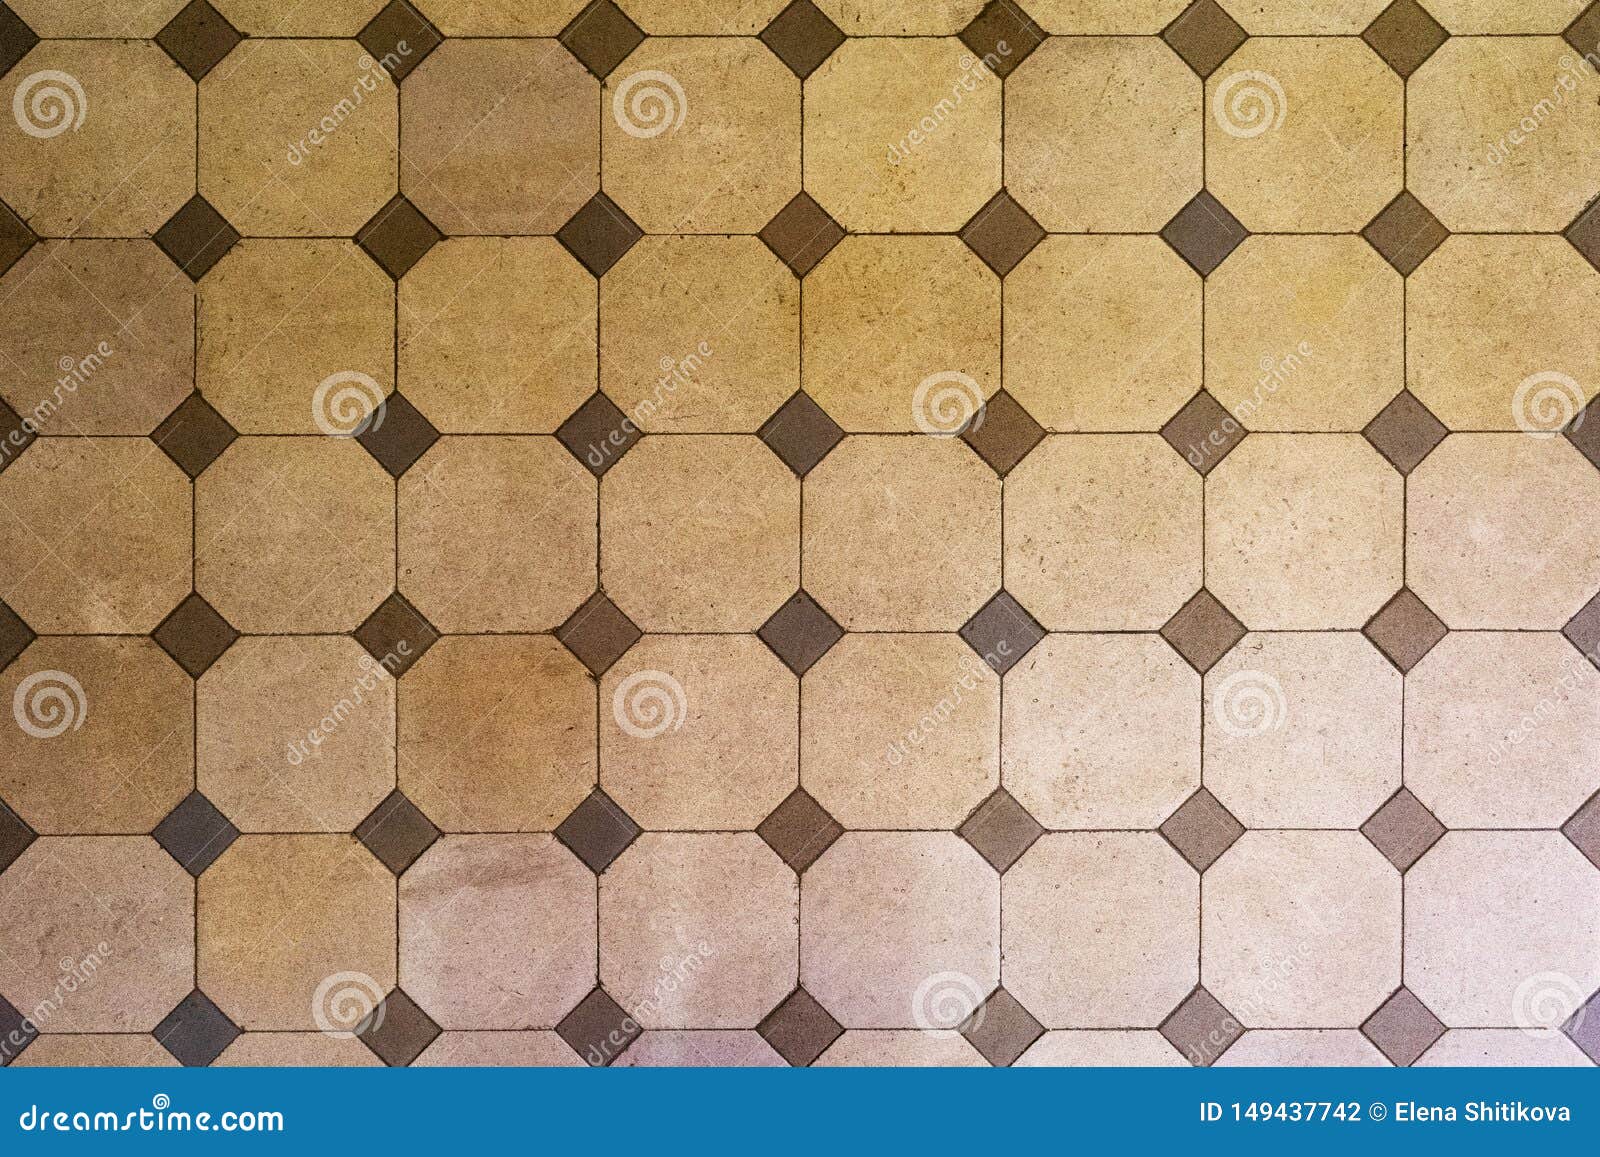 Old Hexagon Tile, Beige Tones. Stock Photo - Image of flooring